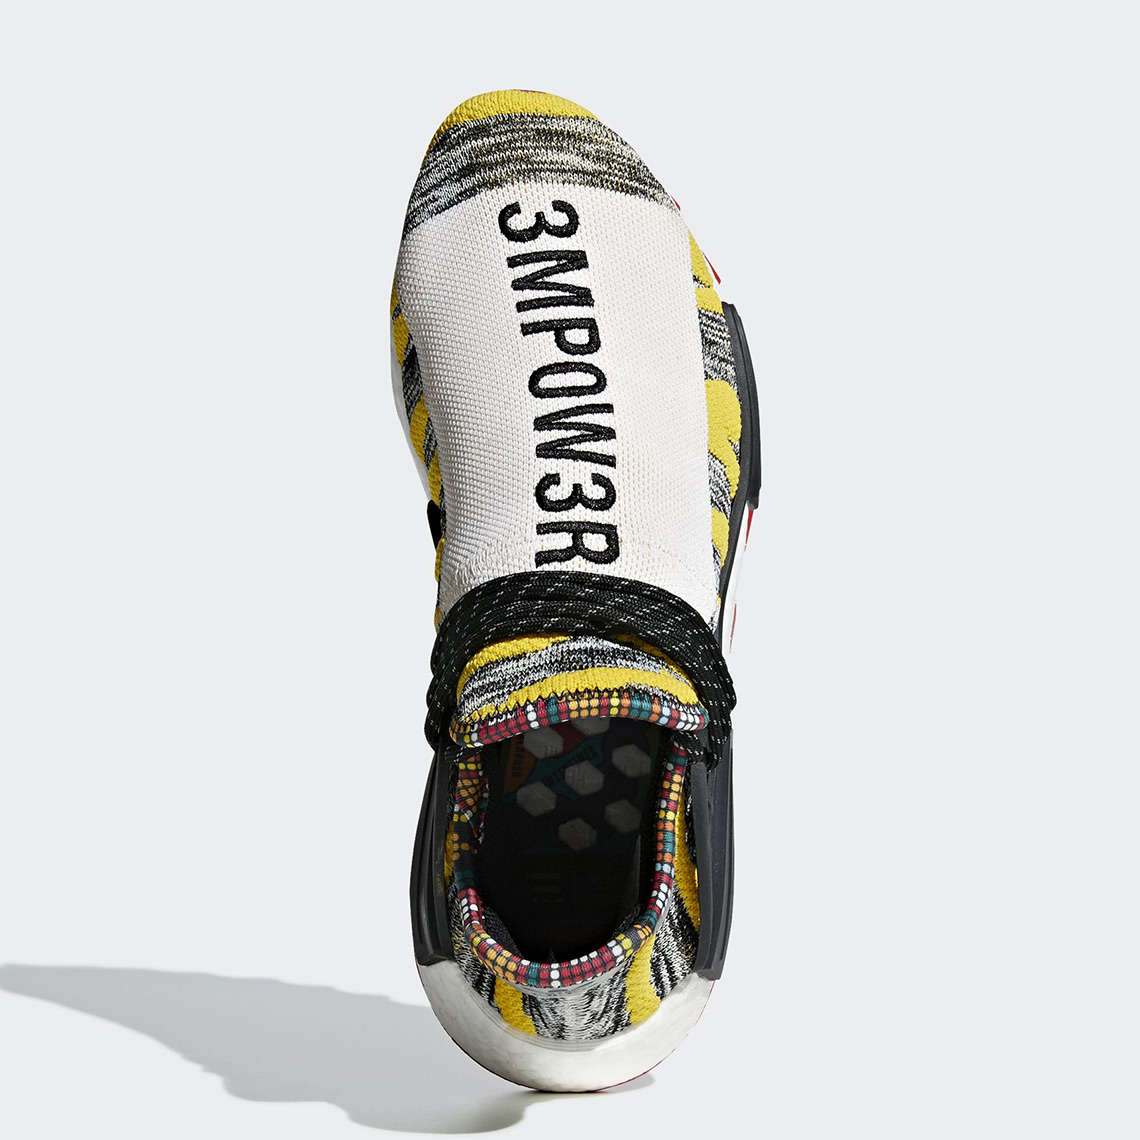 meget sandsynlighed efterspørgsel Pharrell adidas NMD Hu Solar Pack Release Date | SneakerNews.com